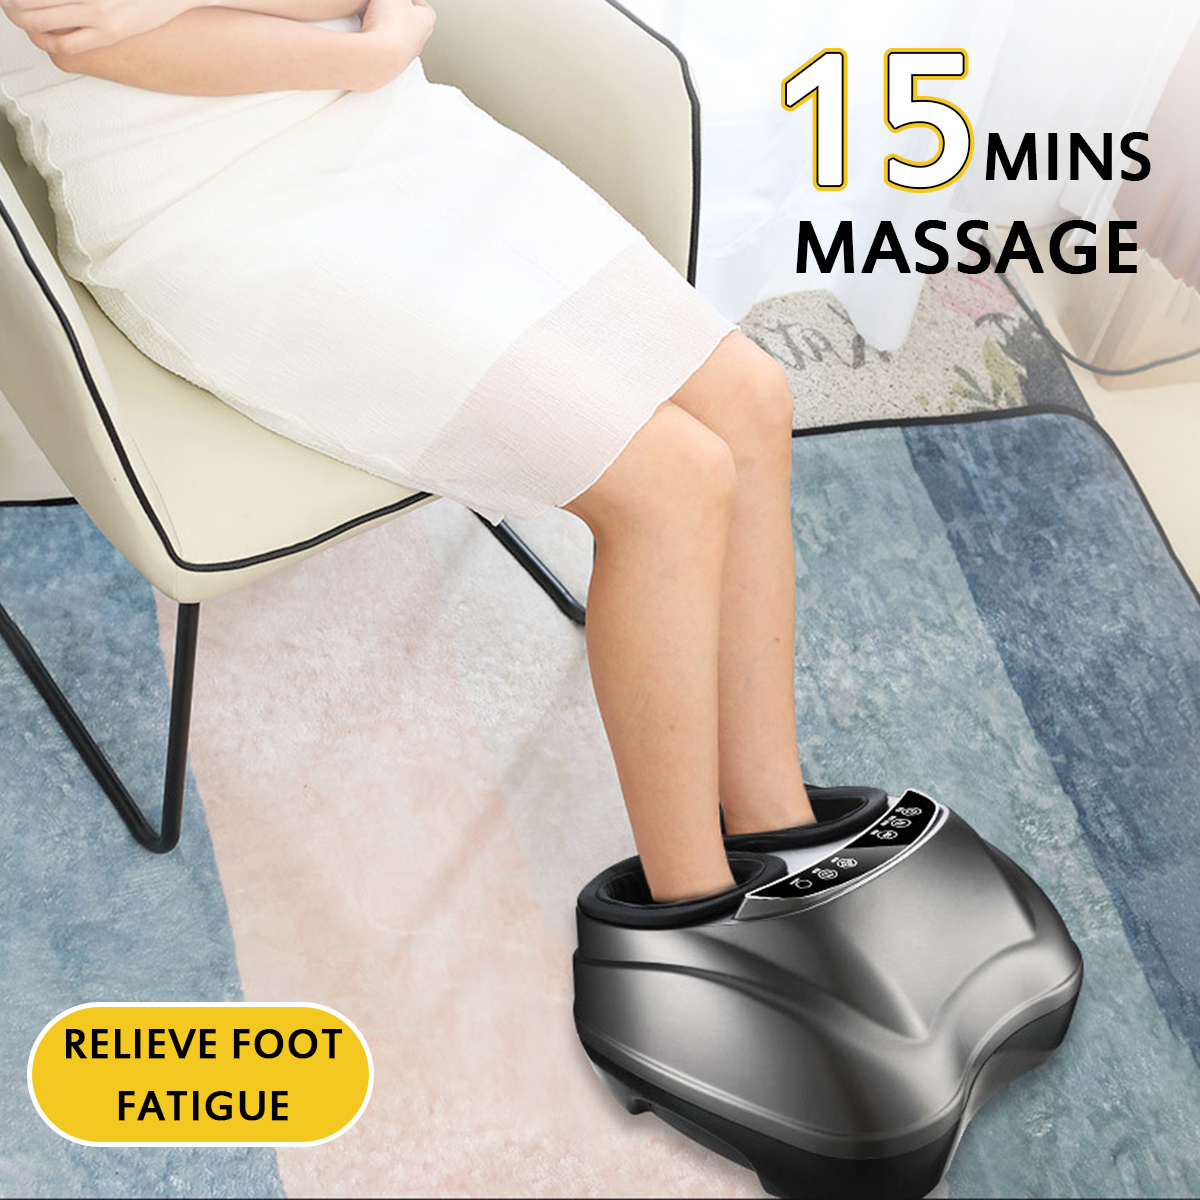 Foot-Massager-3-Strength-Shiatsu-Kneading-Rolling-Calf-Leg-Heat-Therapy-Massage-1807152-5